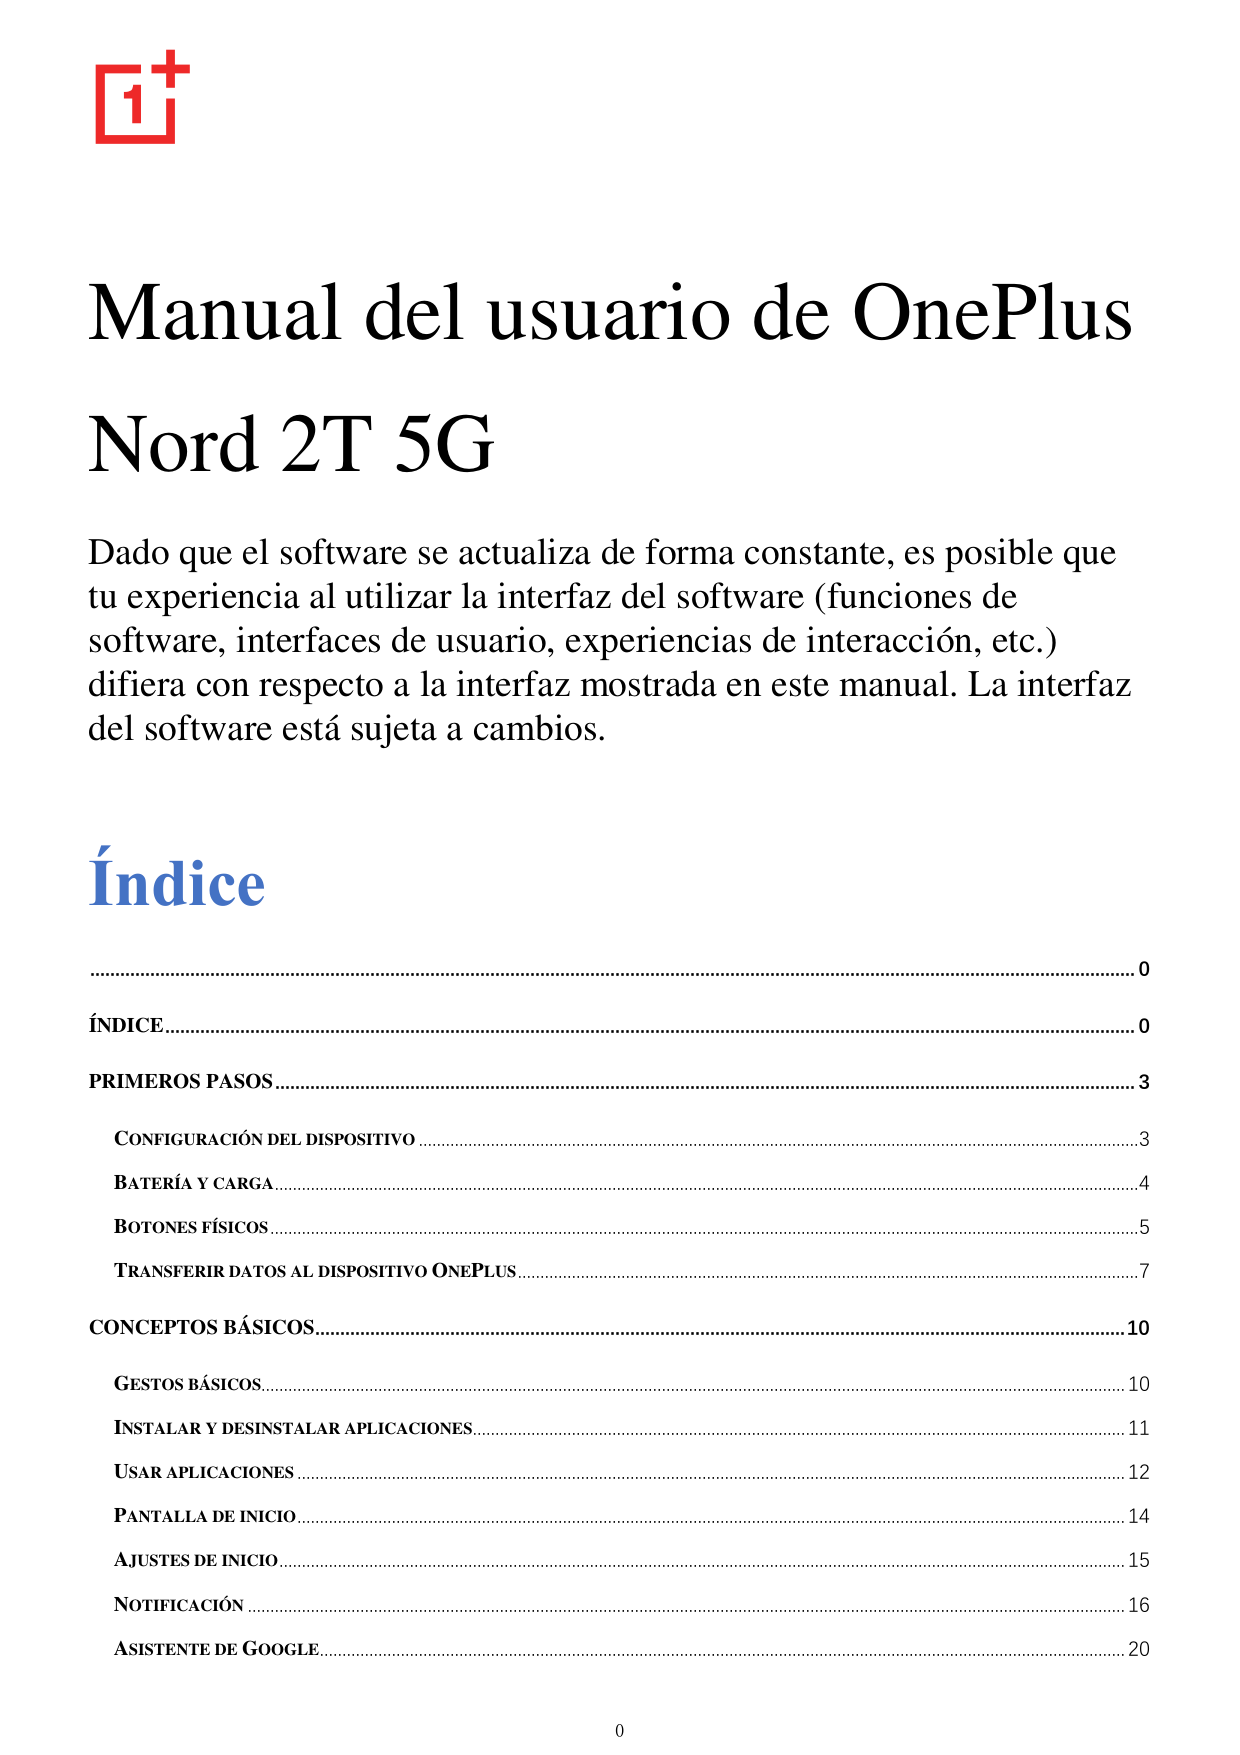 Manual del usuario de OnePlusNord 2T 5GDado que el software se actualiza de forma constante, es posible quetu experiencia al uti